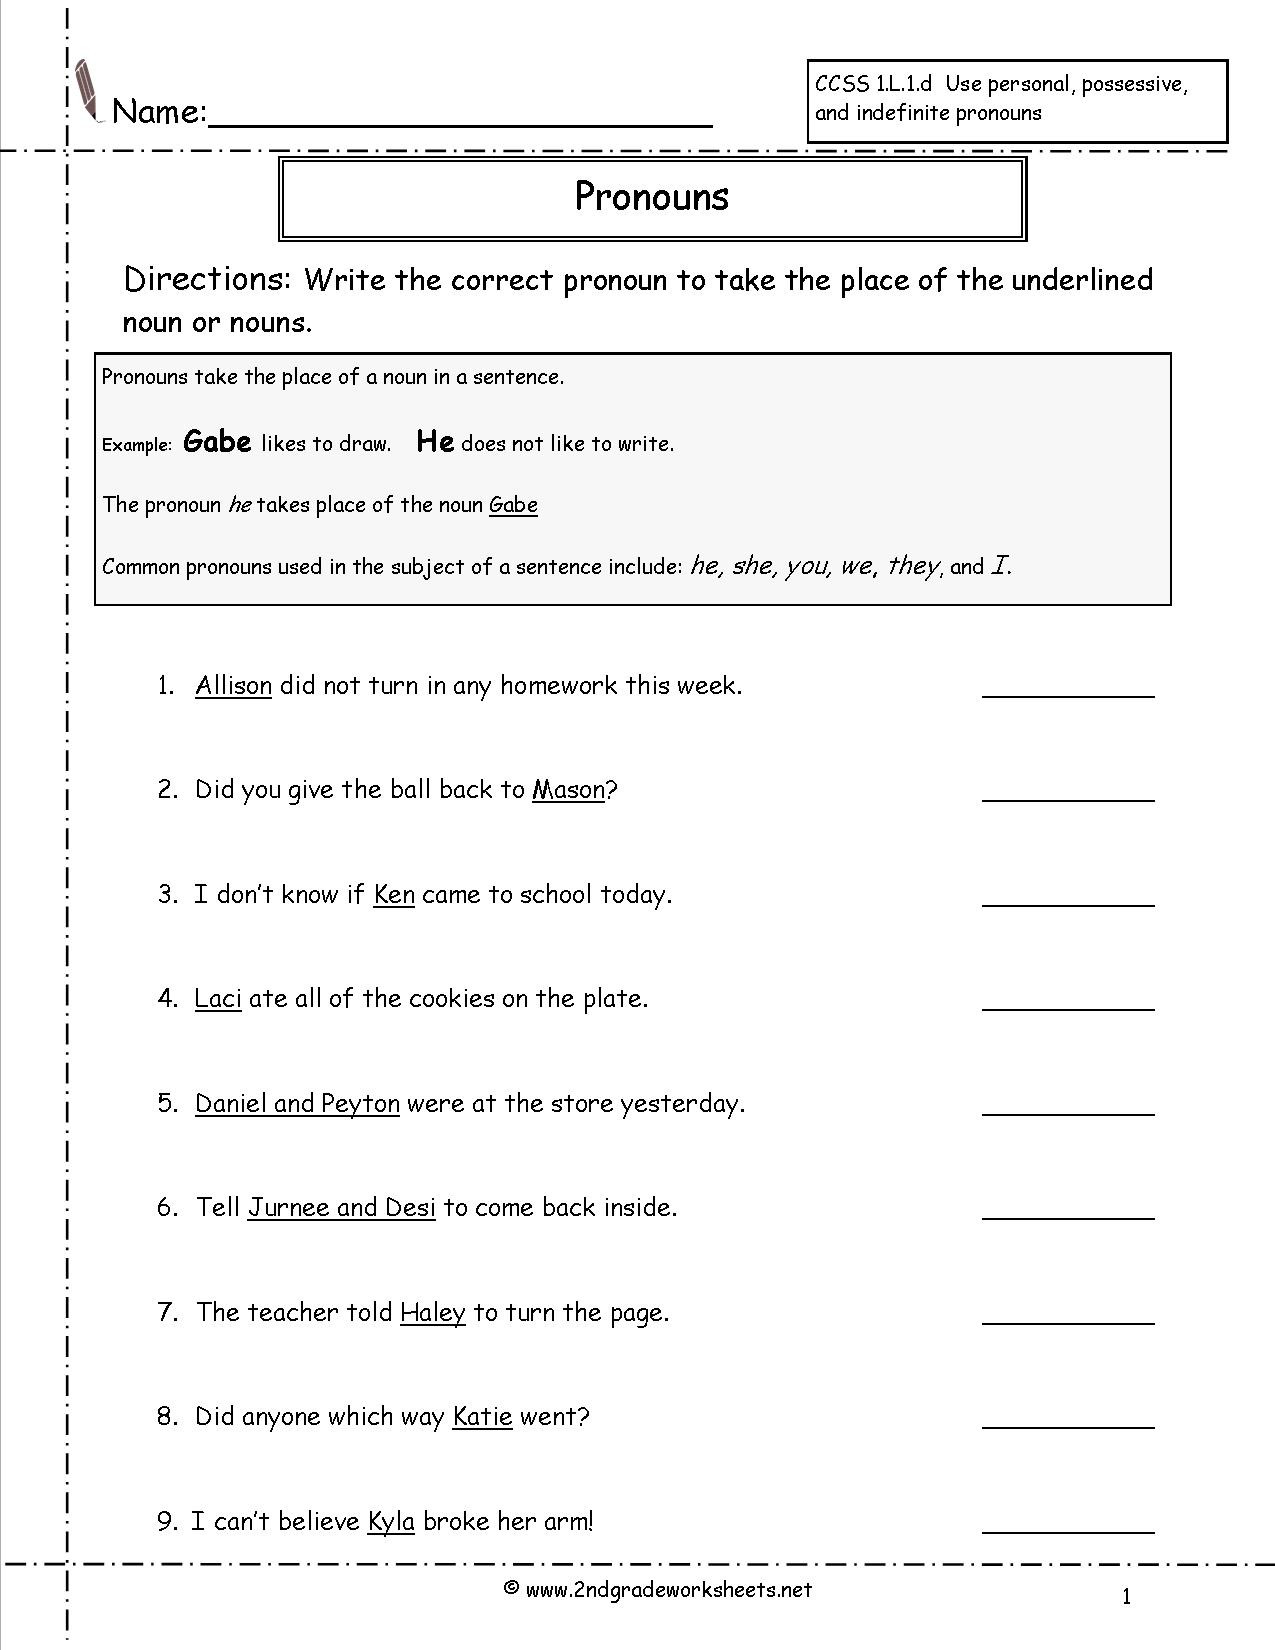 Pronoun Worksheet for 2nd Grade Free Pronoun Worksheet for 2nd Grade